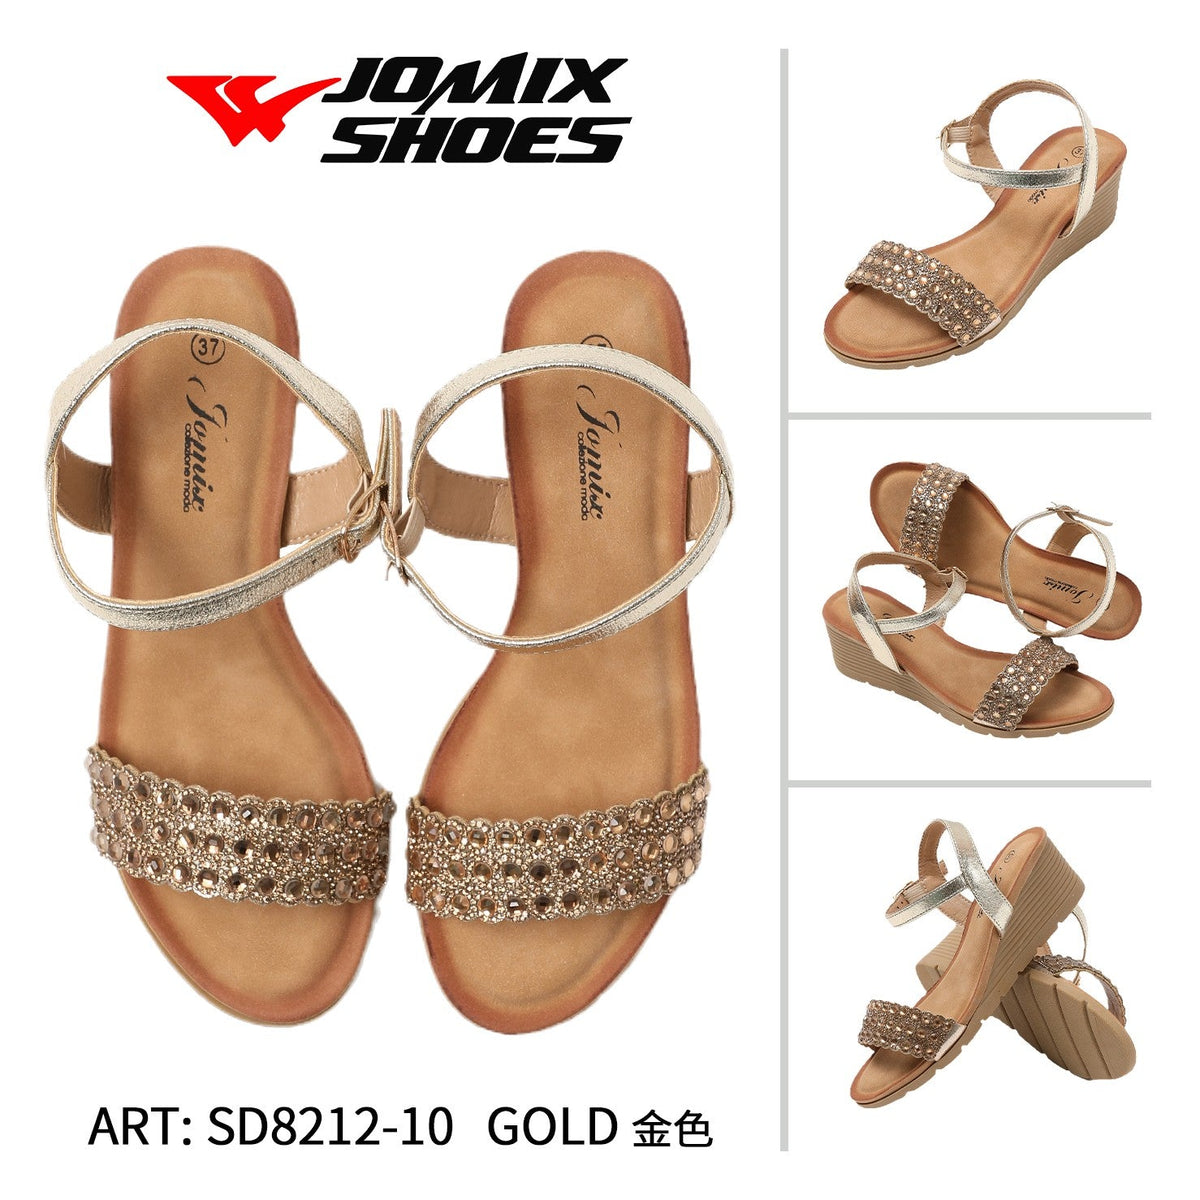 Sandali da donna Jomix Shoes SD8212-10